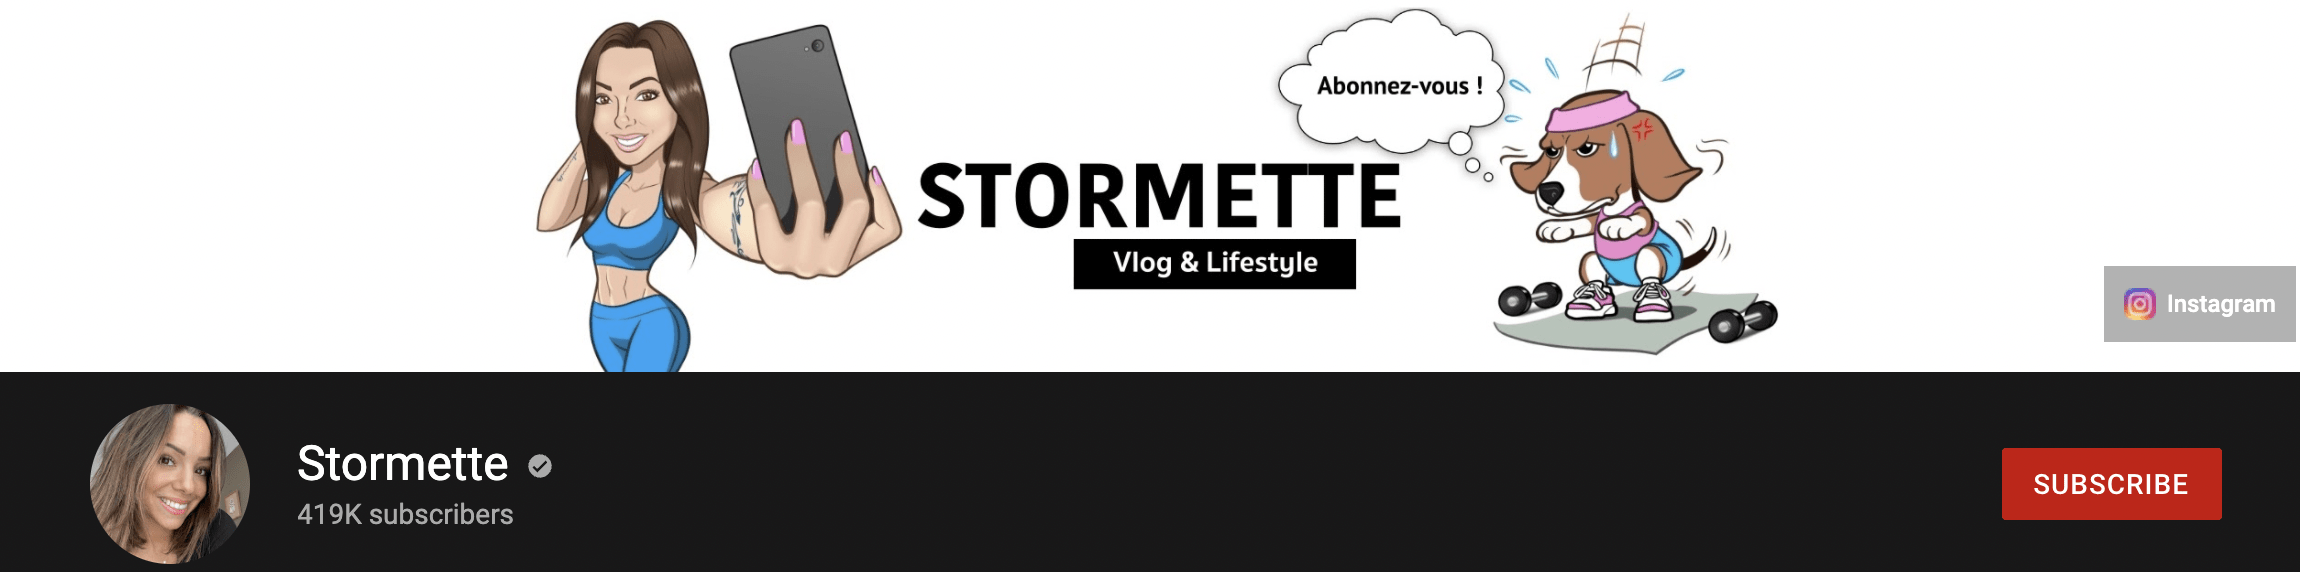 Stormette Youtube Channel